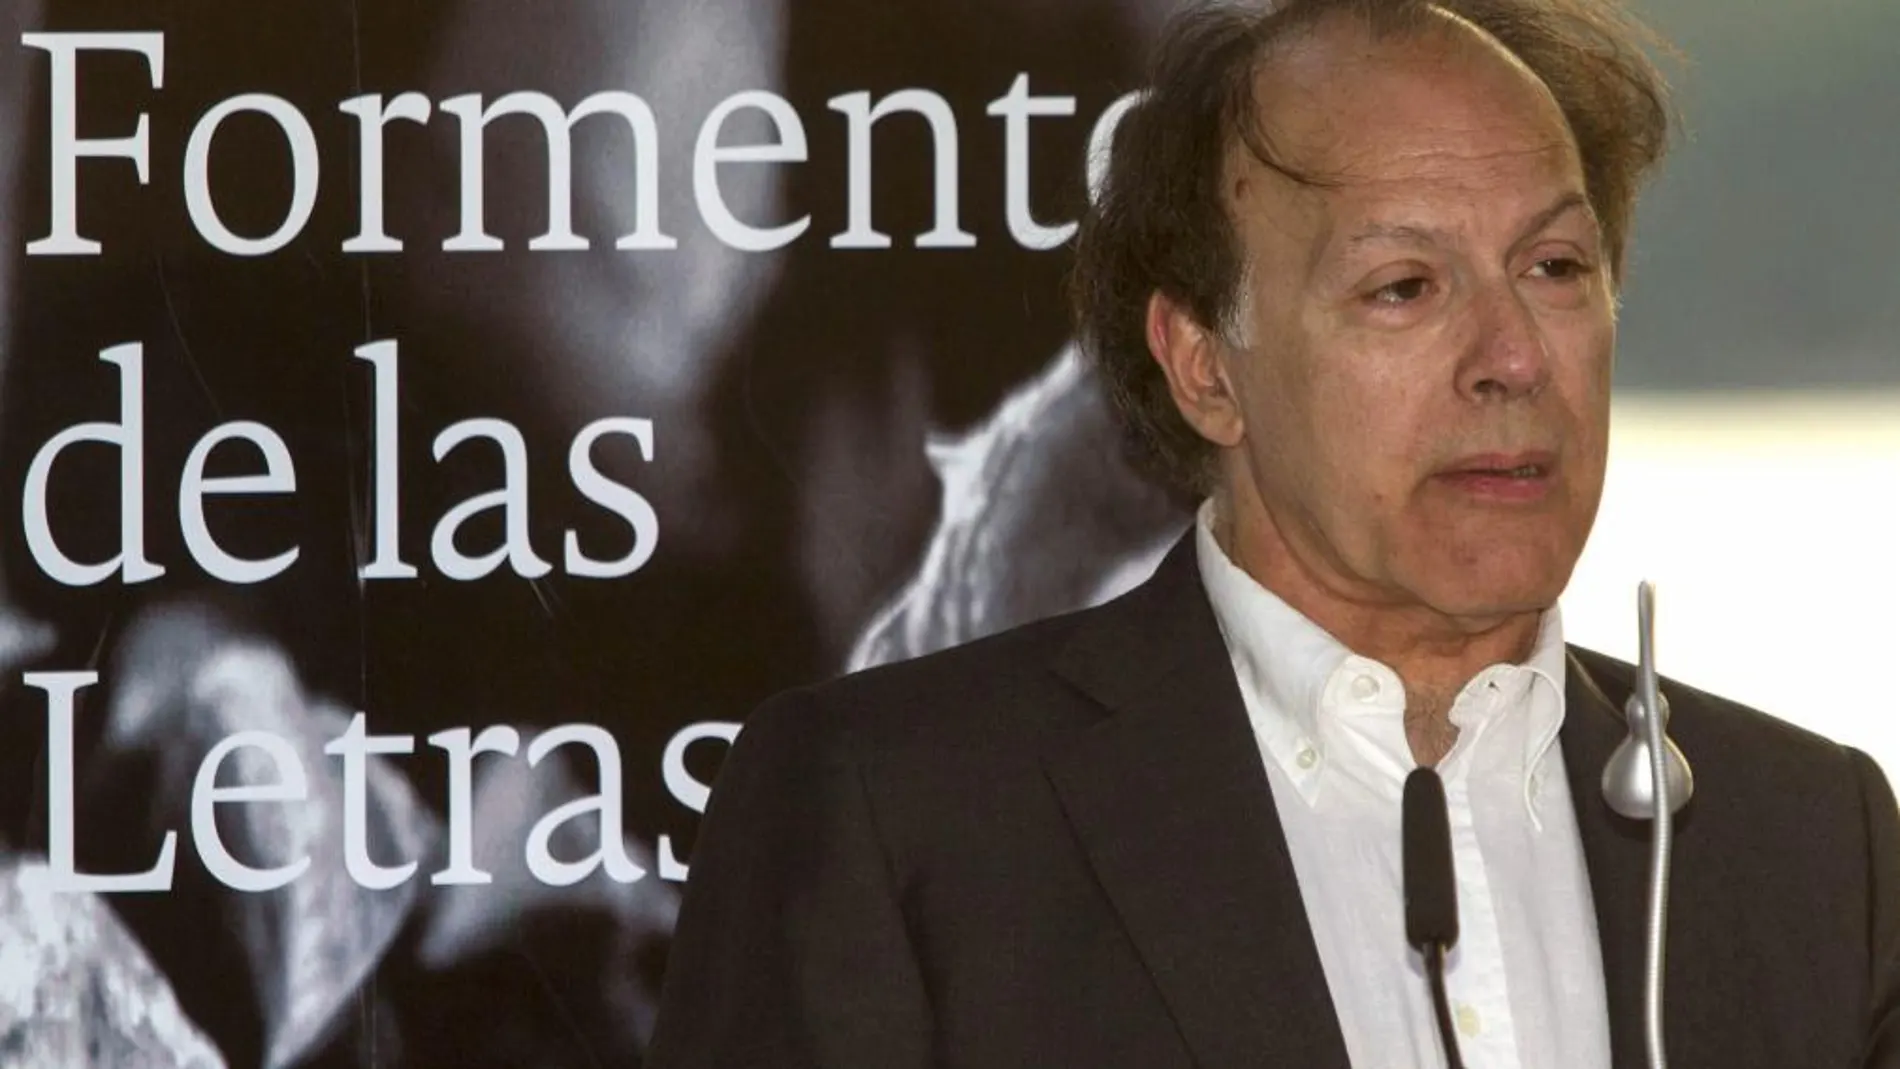 El escritor y académico Javier Marías pronuncia unas palabras tras recibir el premio Formentor de las Letras con el que ha sido galardonado en esta edición.